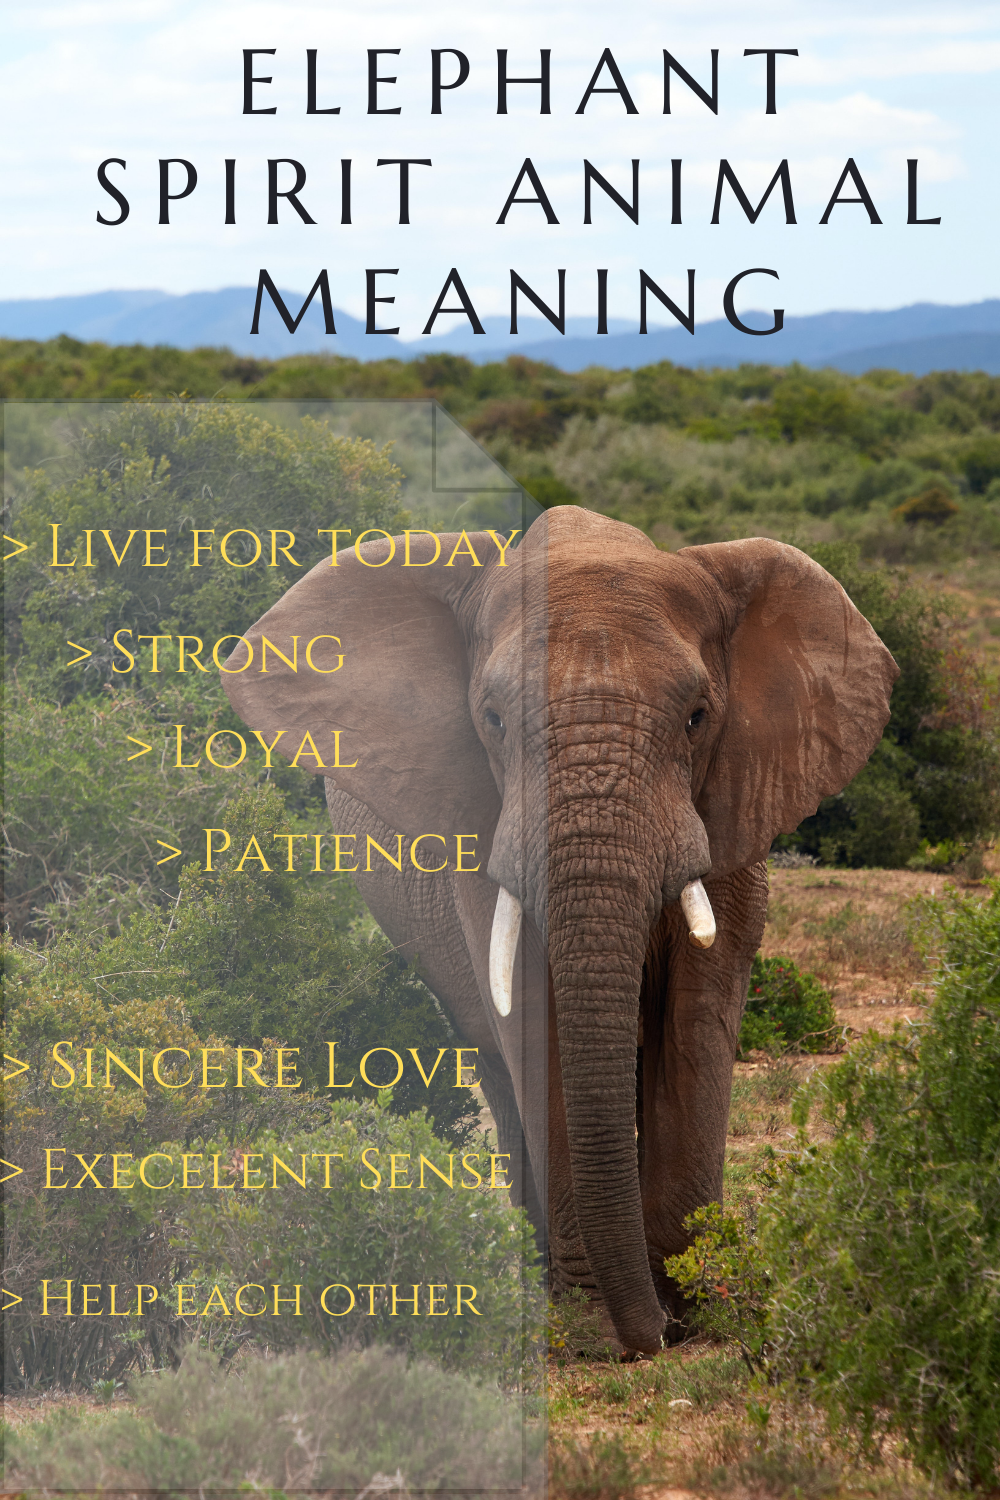 spirit animal elephant meaning